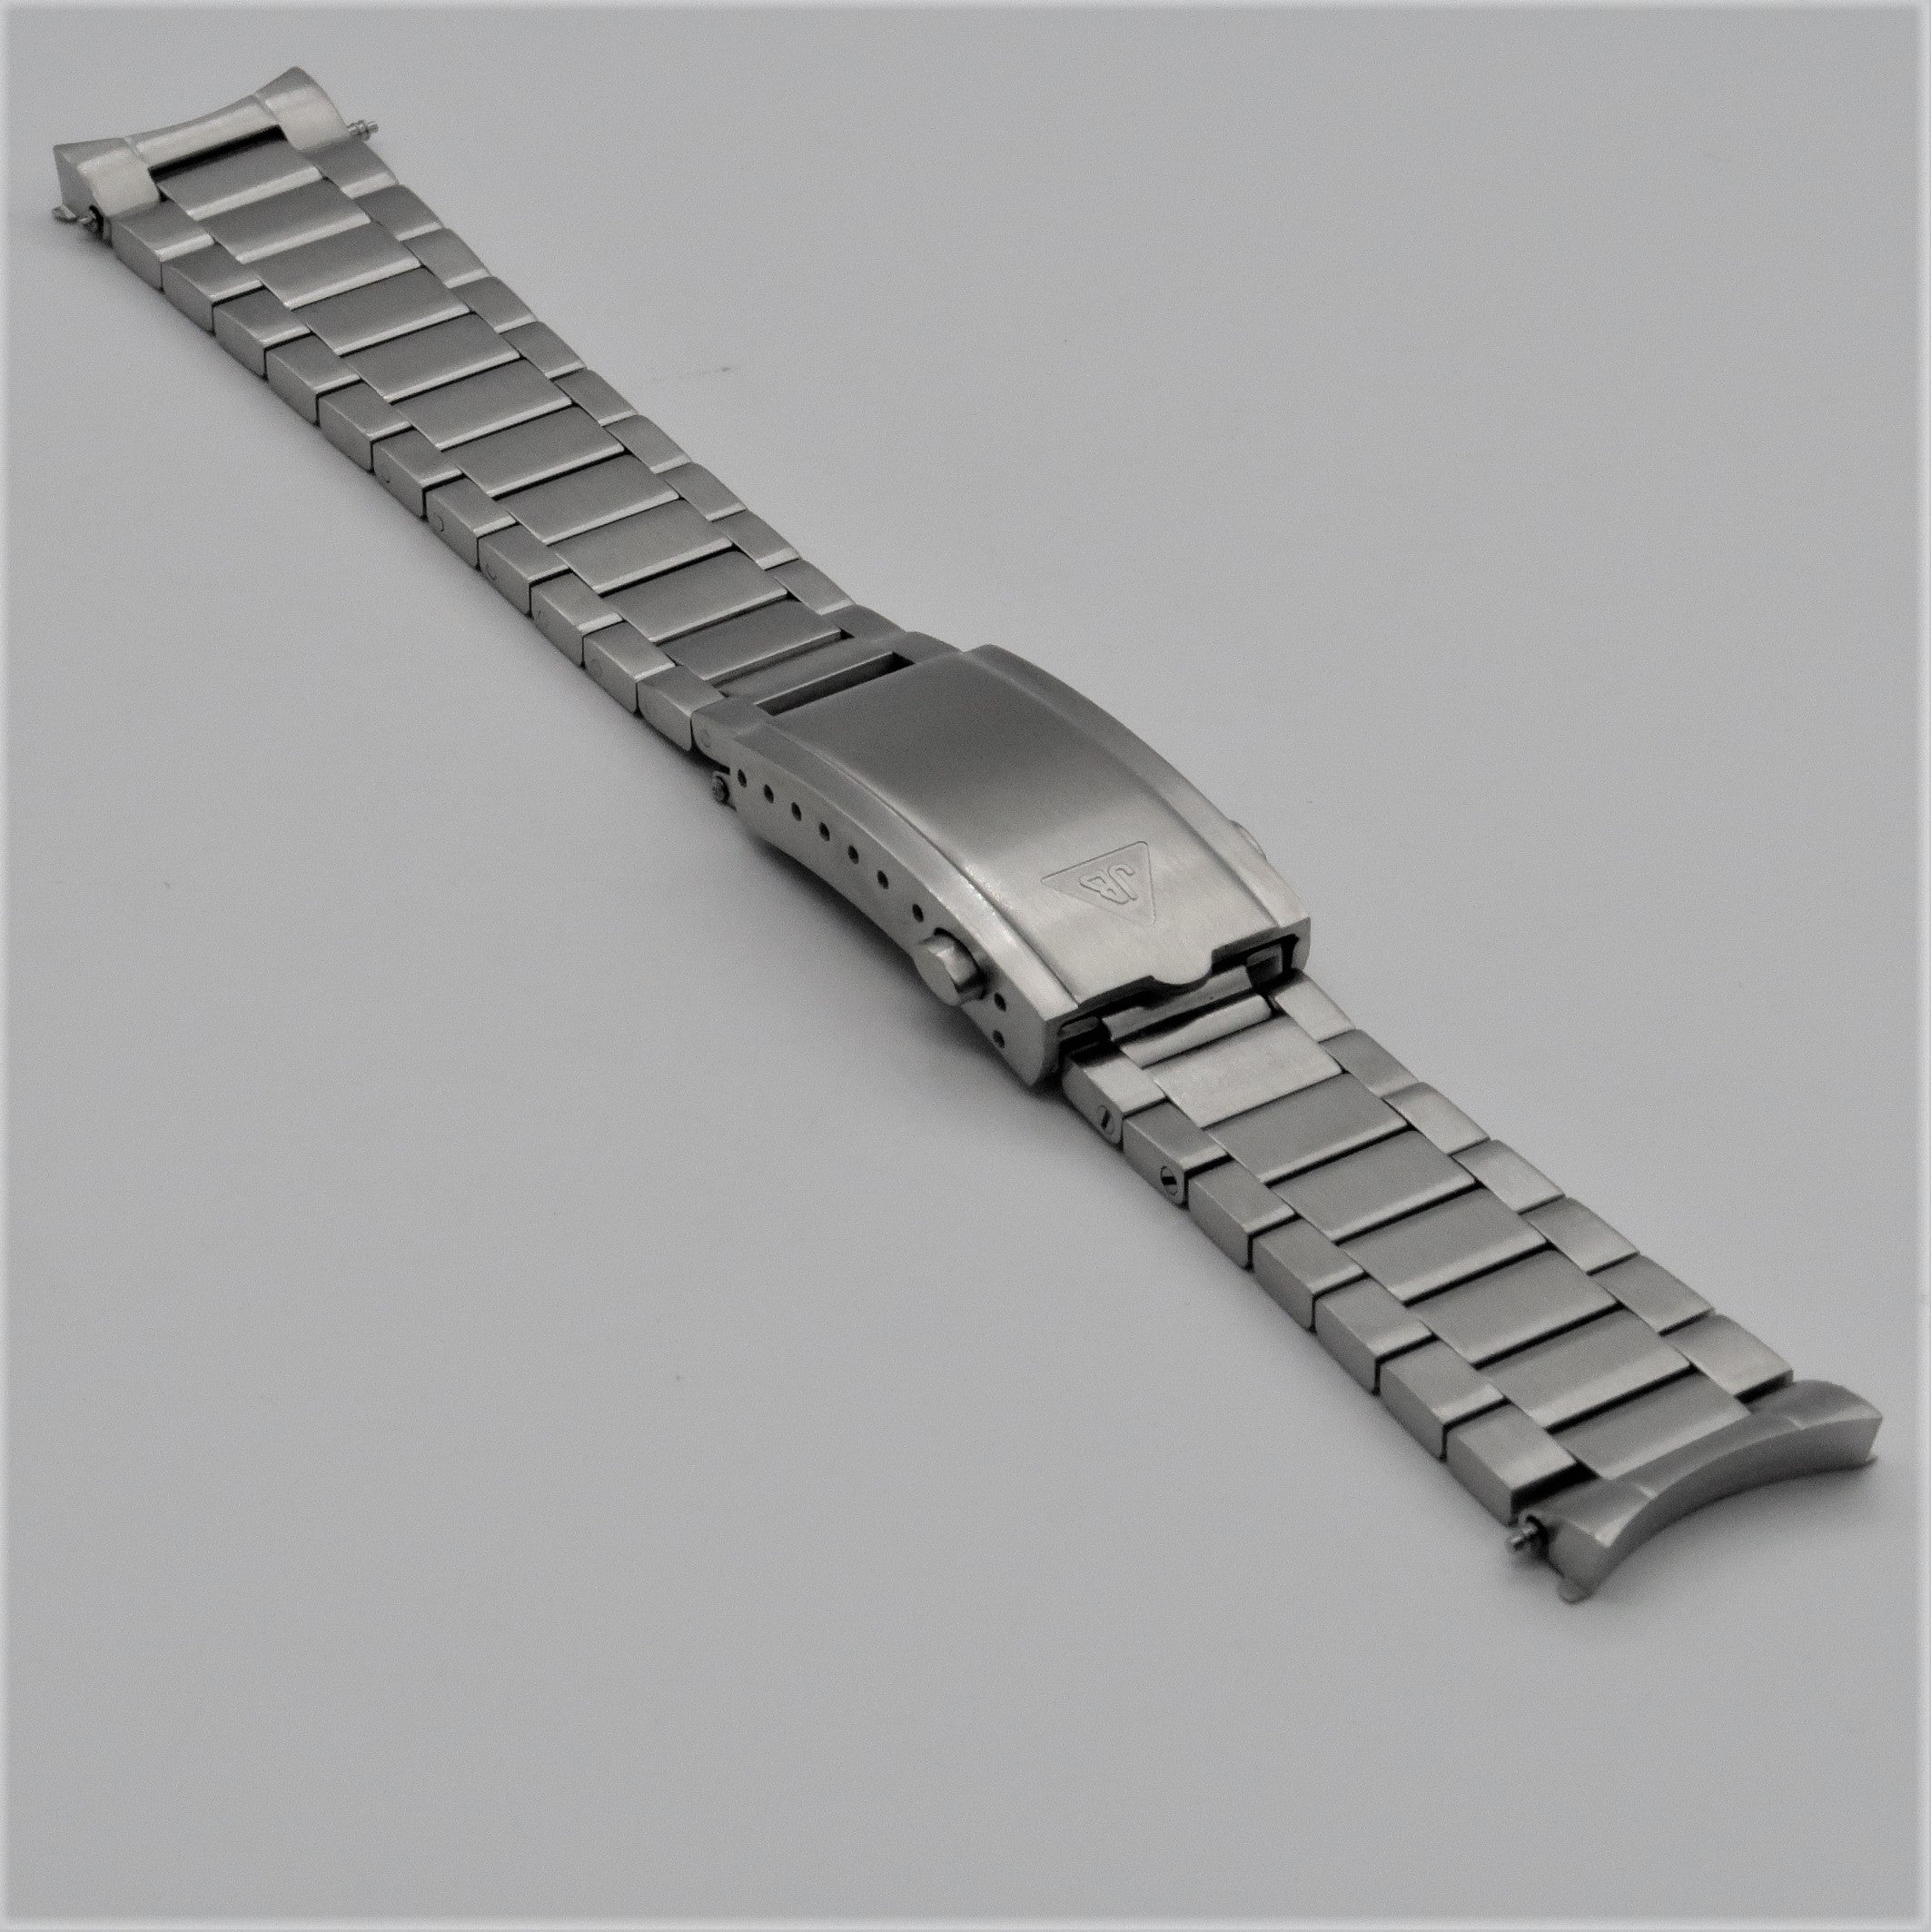 [Forstner] Brushed Contemporary Flat Link Bracelet for Black Bay 58